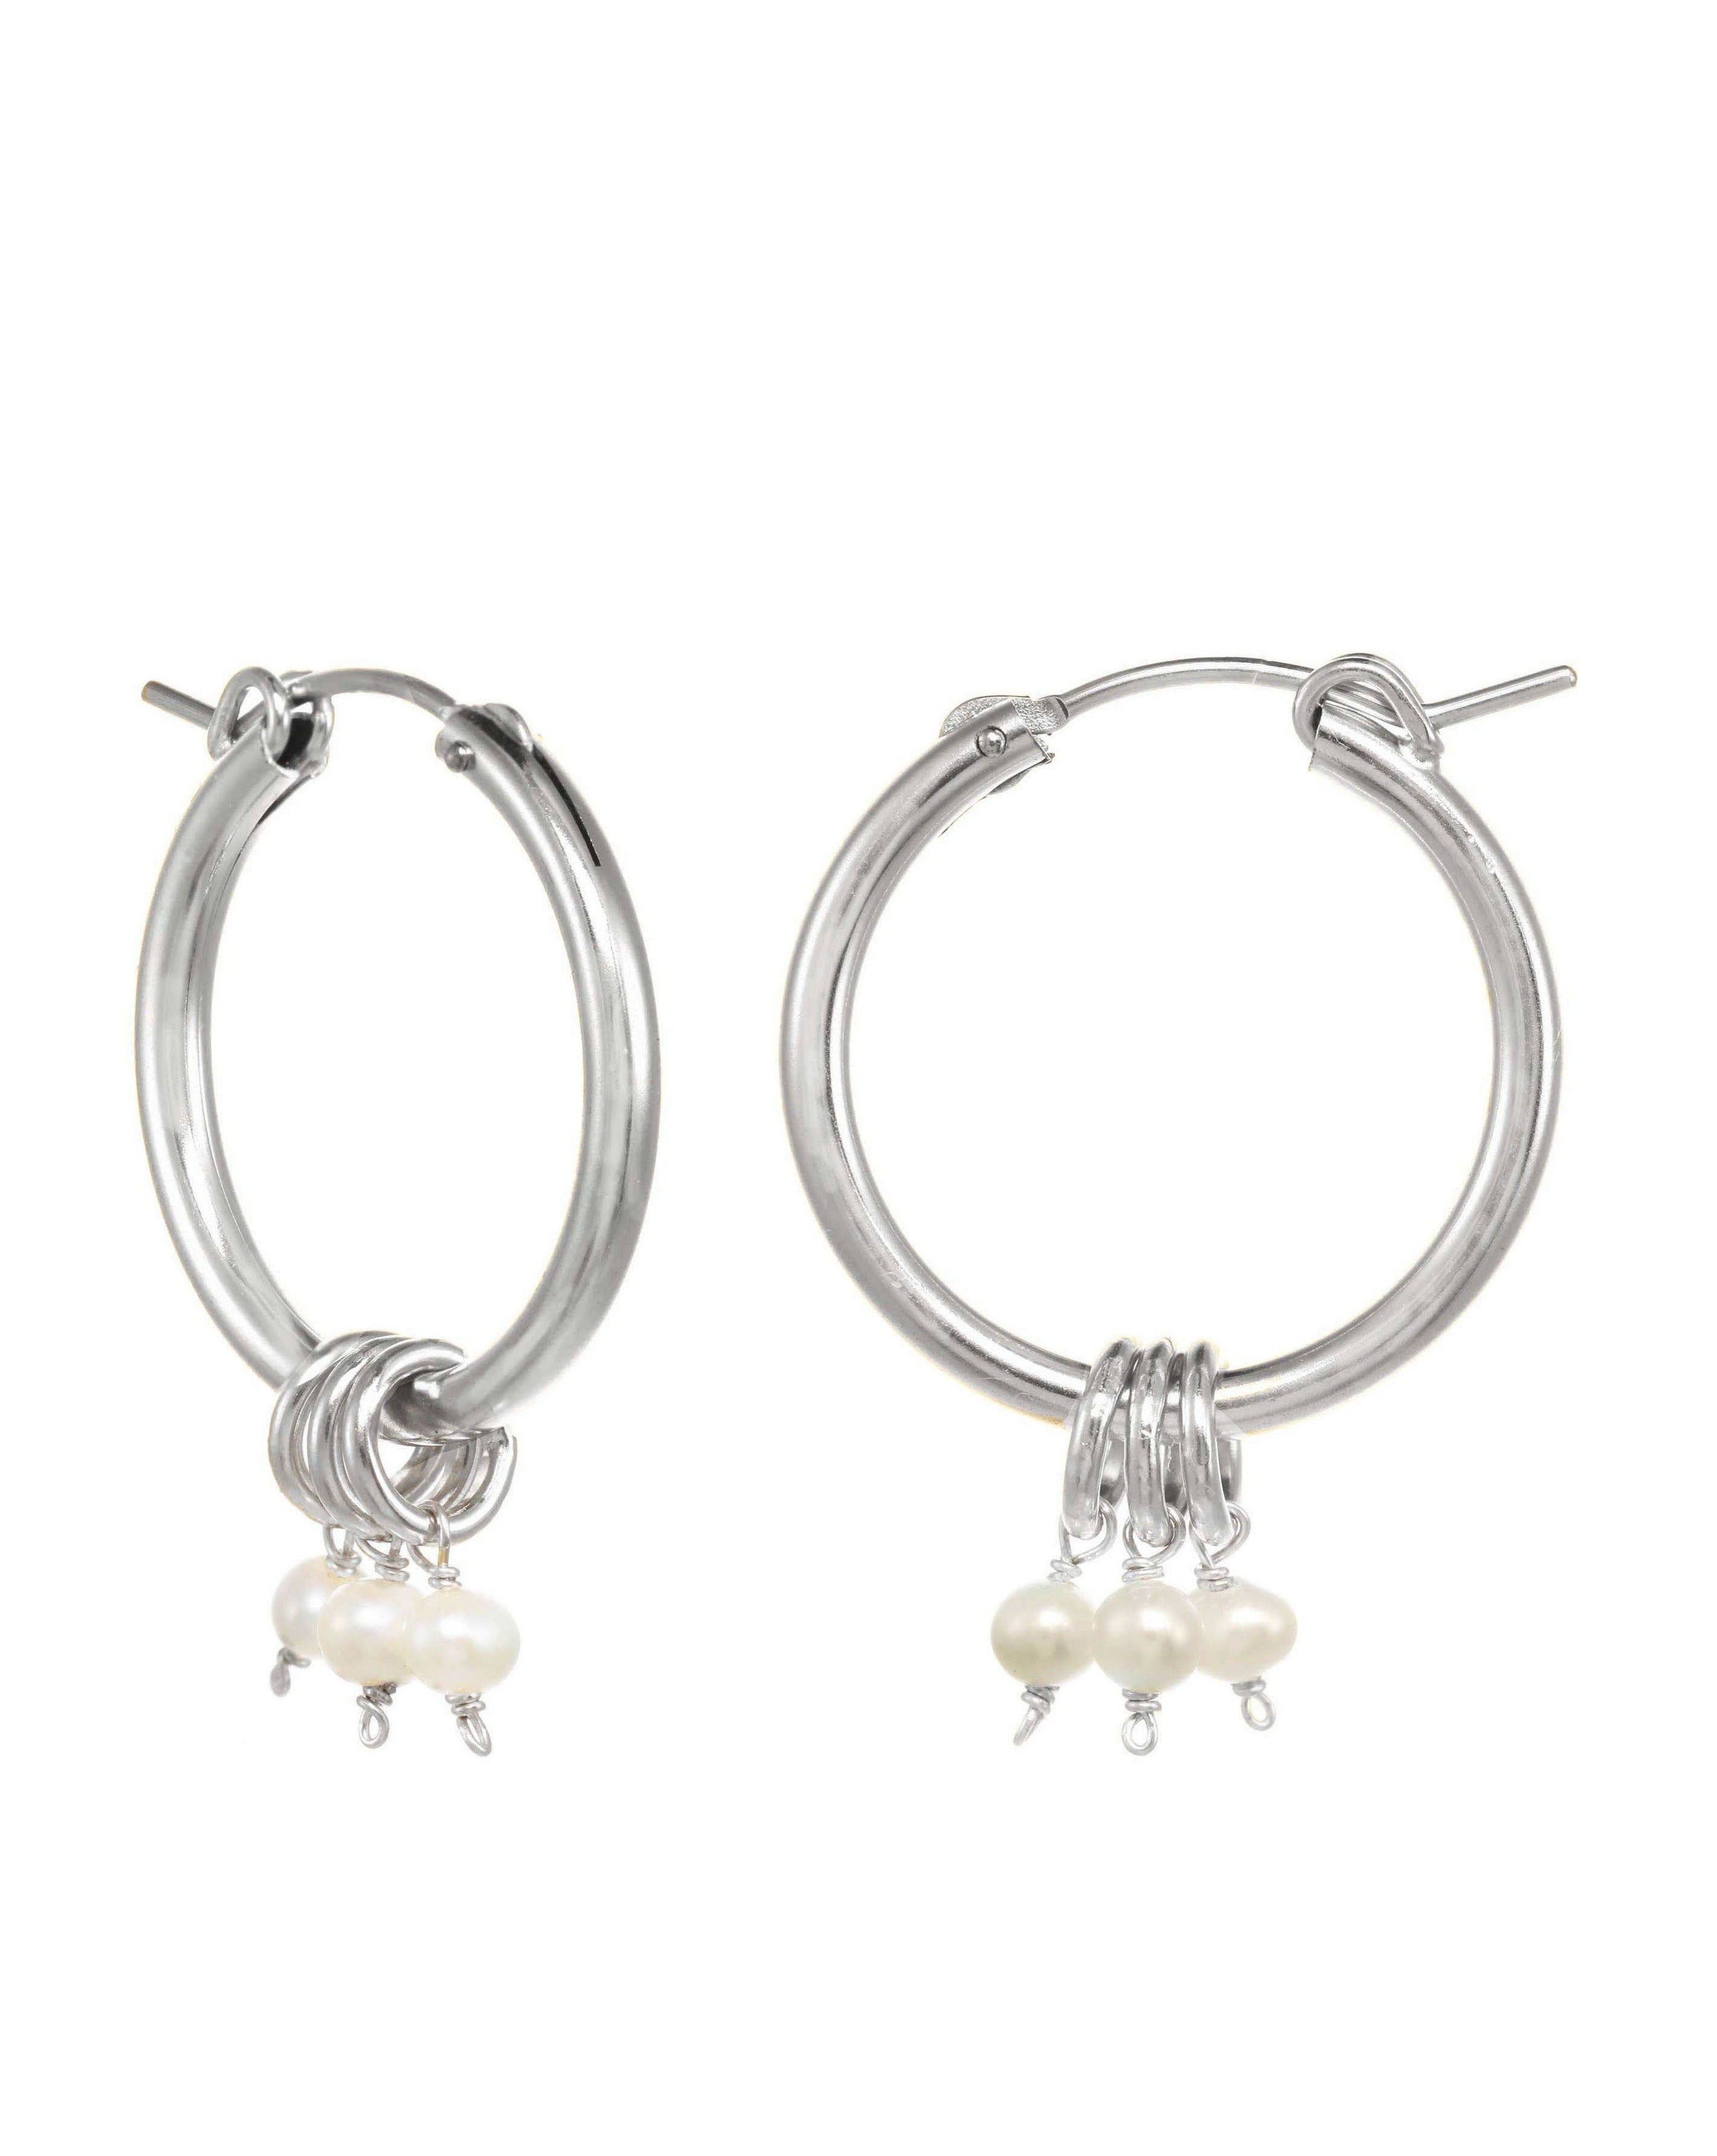 Noelle Hoop Earrings by KOZAKH. 22mm snap closure hoop earrings in Sterling Silver, featuring 7mm white Potato Pearls.